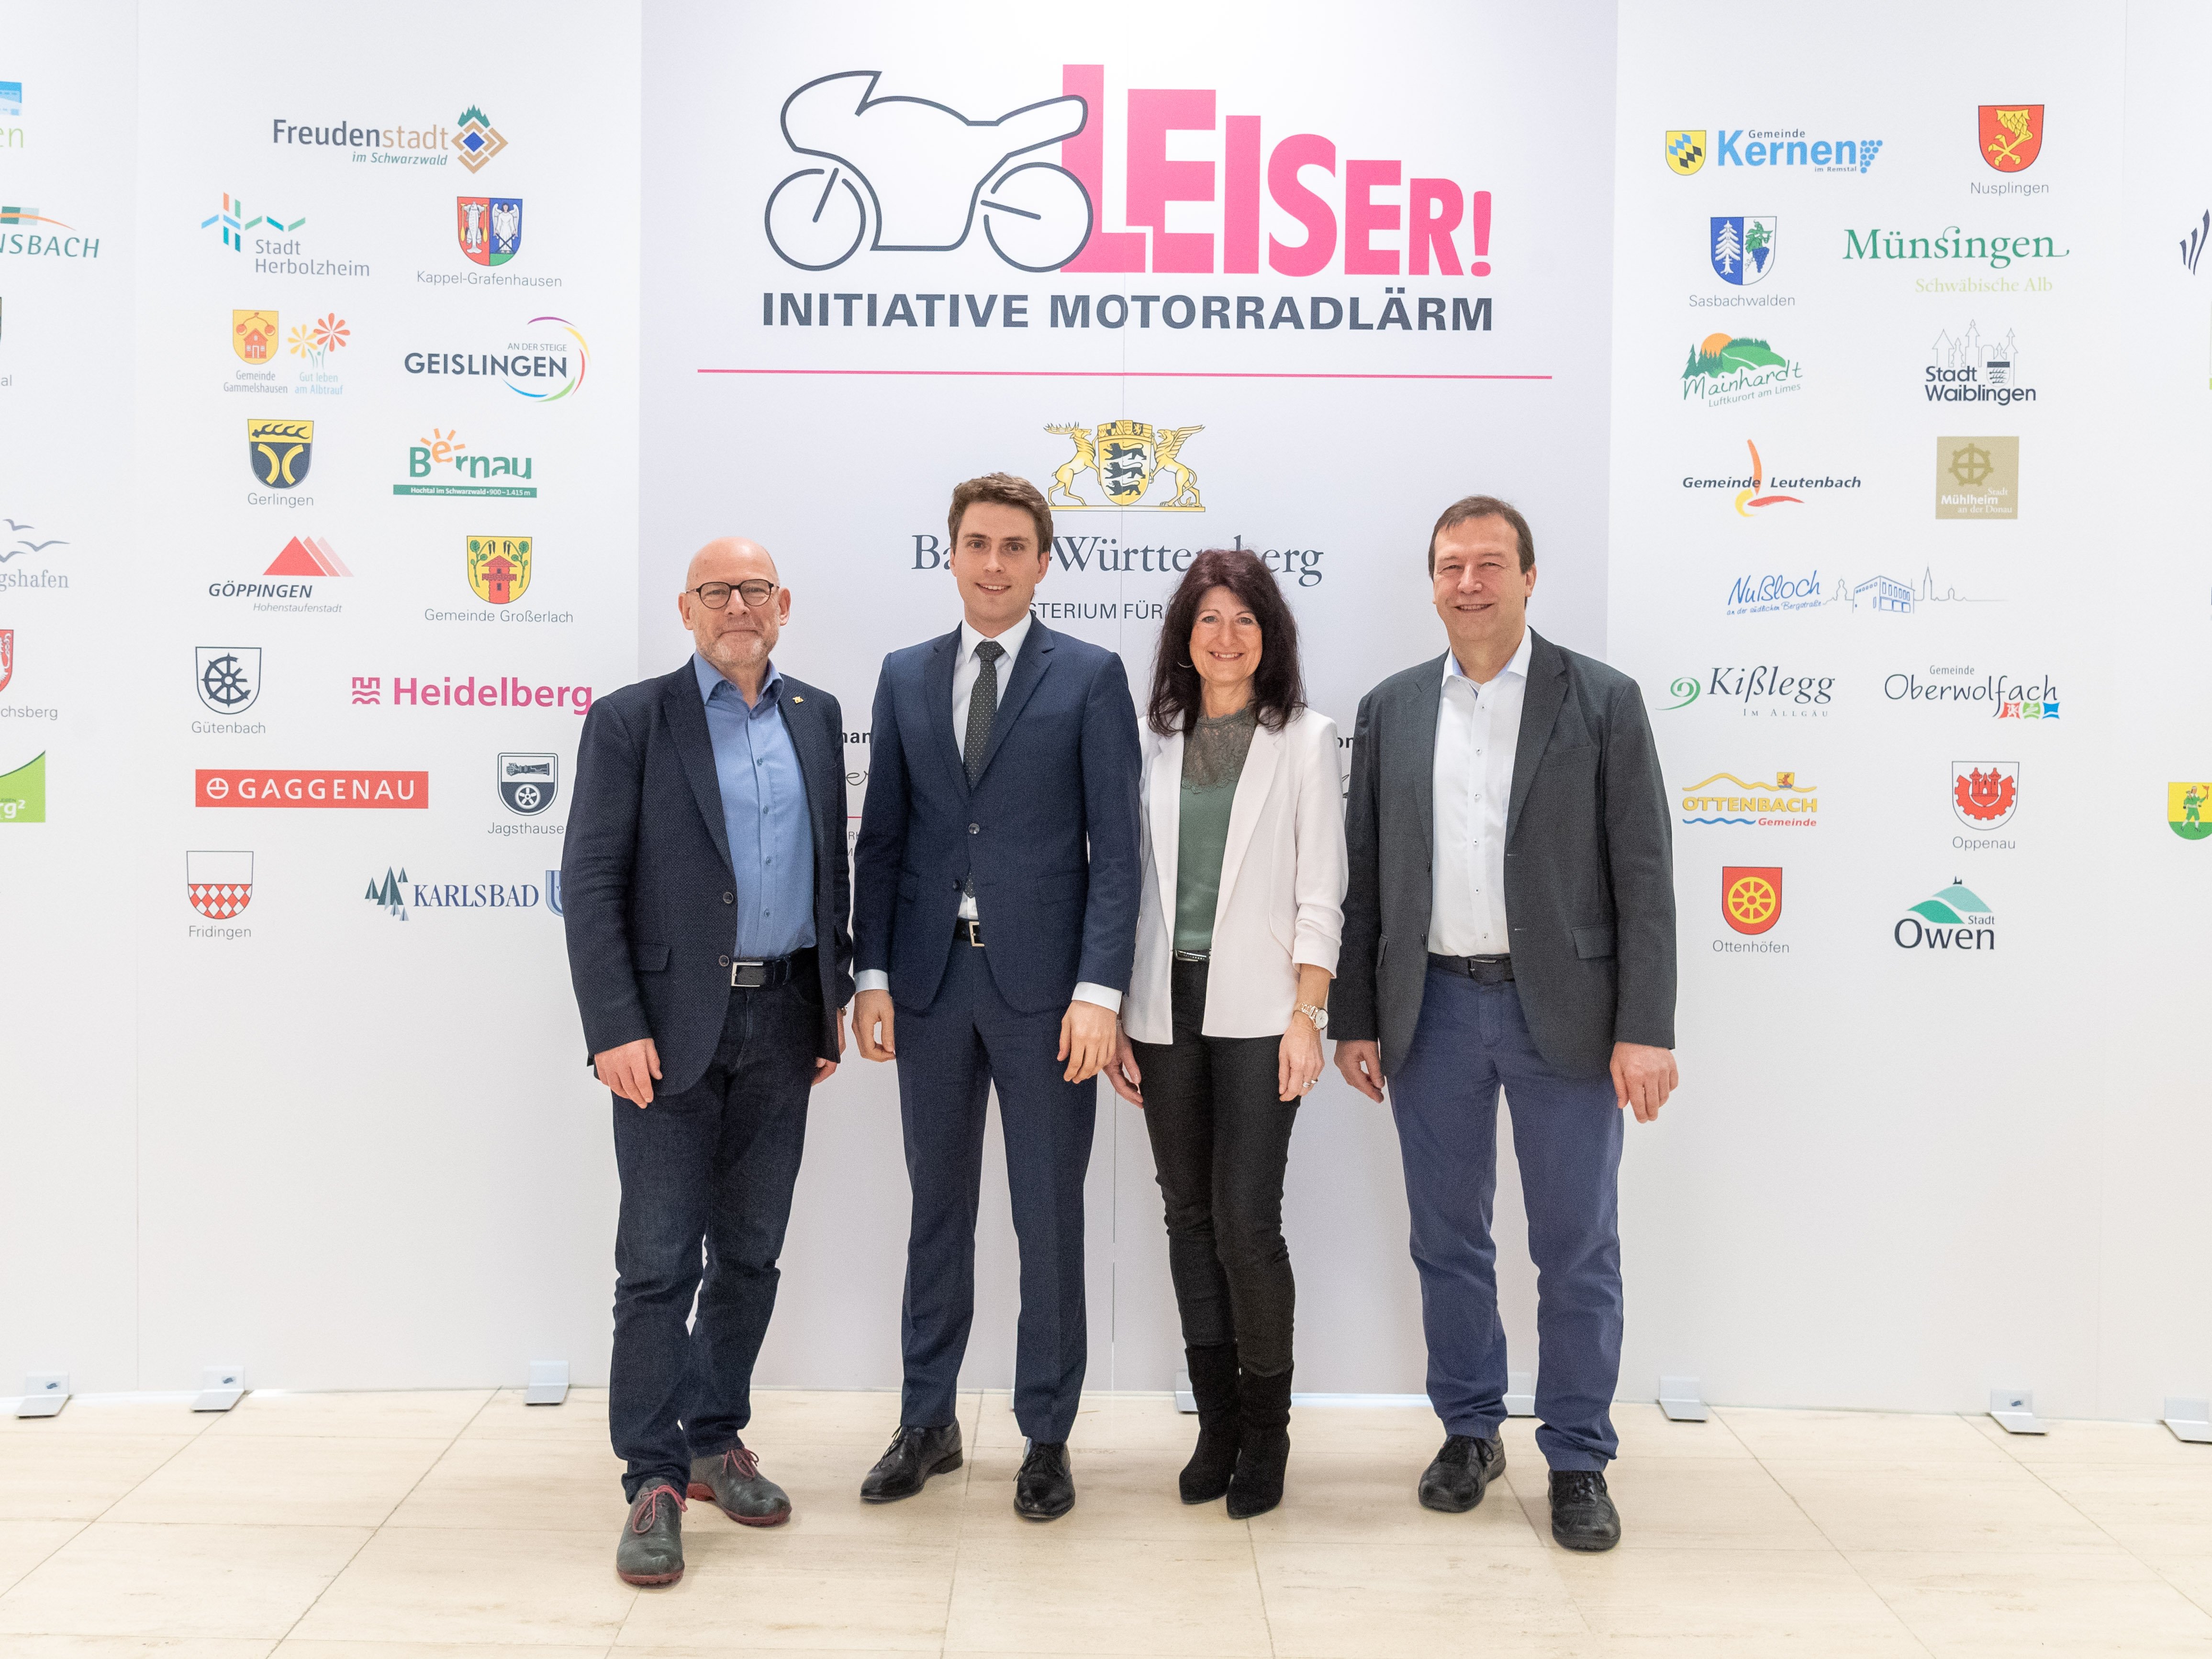  Bürgermeister Adrian Probst beim Startschuss Initiative Motorradlärm in Stuttgart 